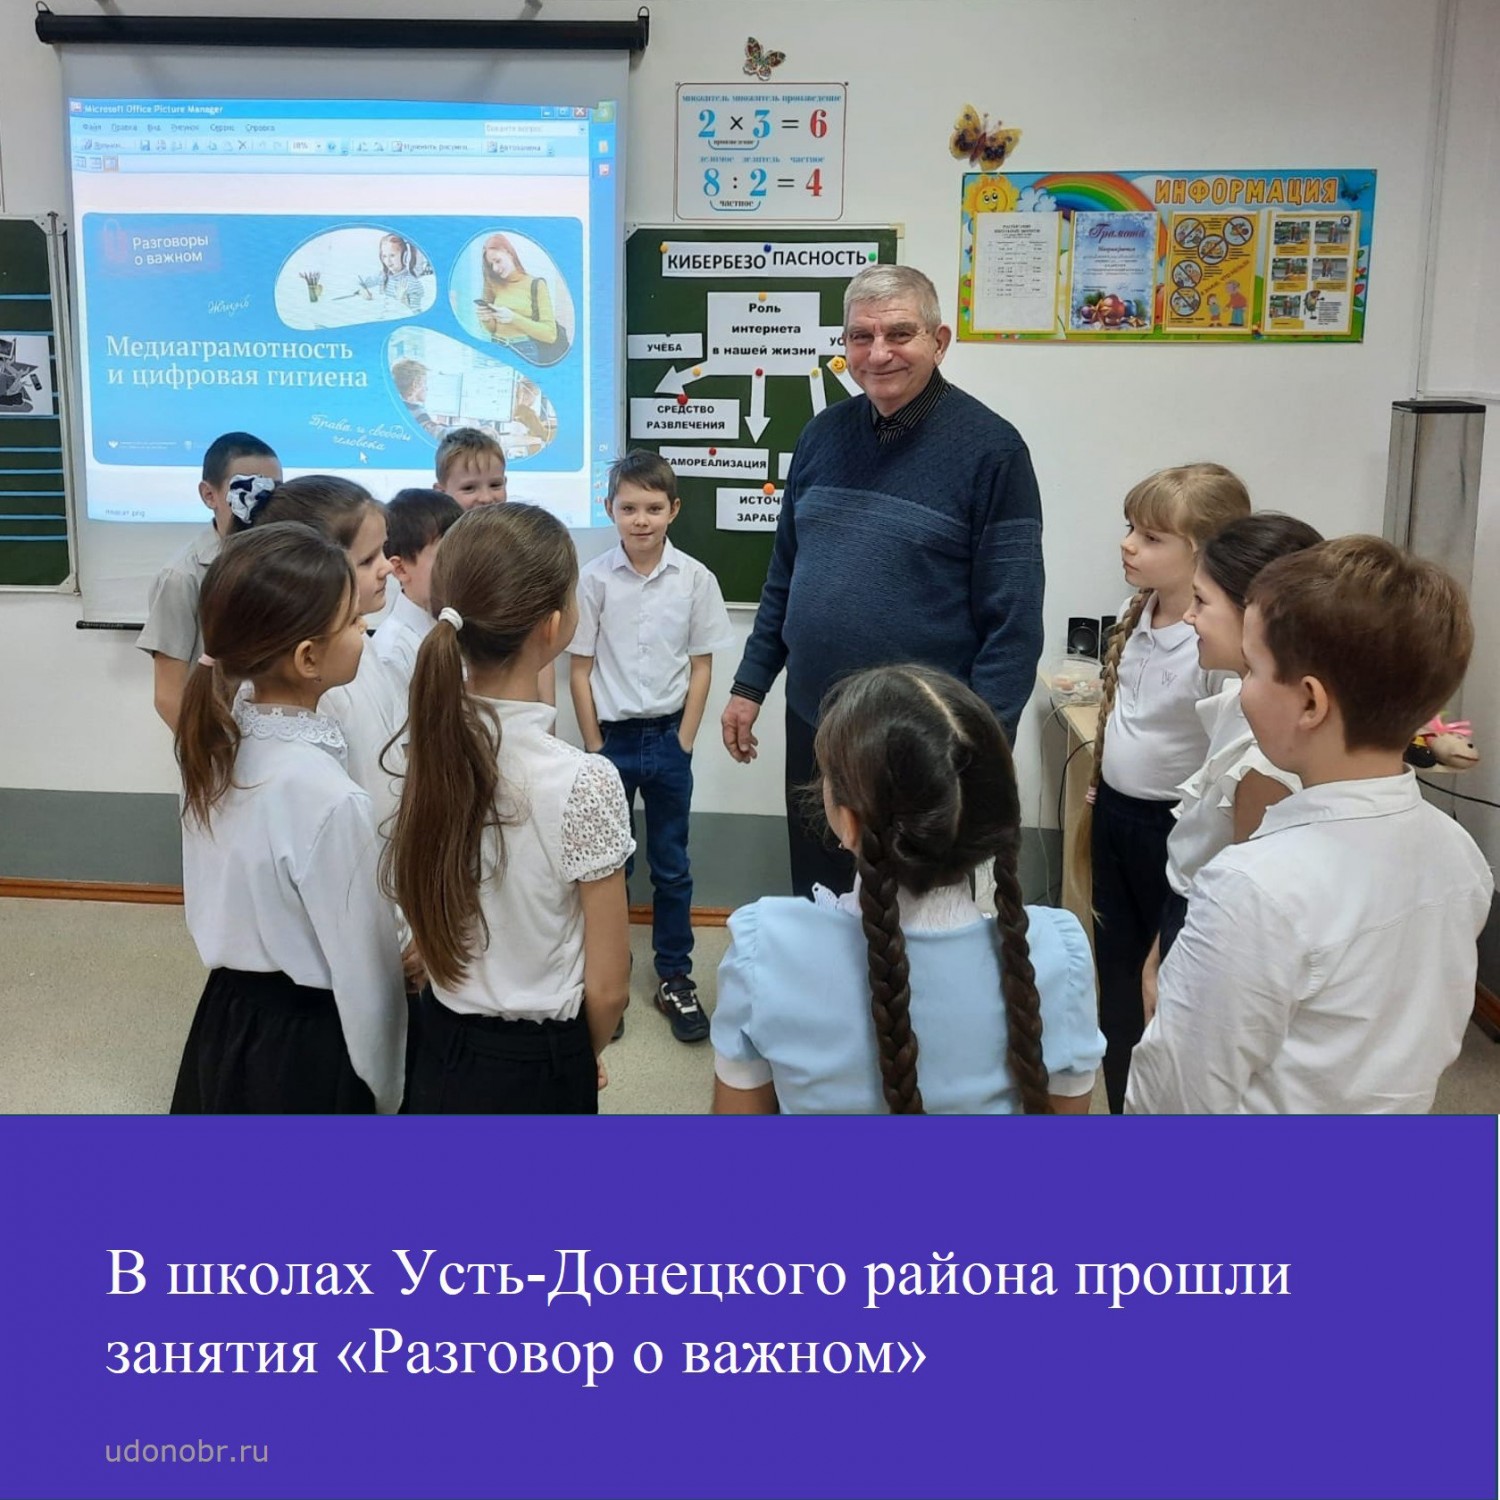 В школах Усть-Донецкого района прошли занятия «Разговор о важном» по теме «Медиаграмотность и цифровая гигиена»